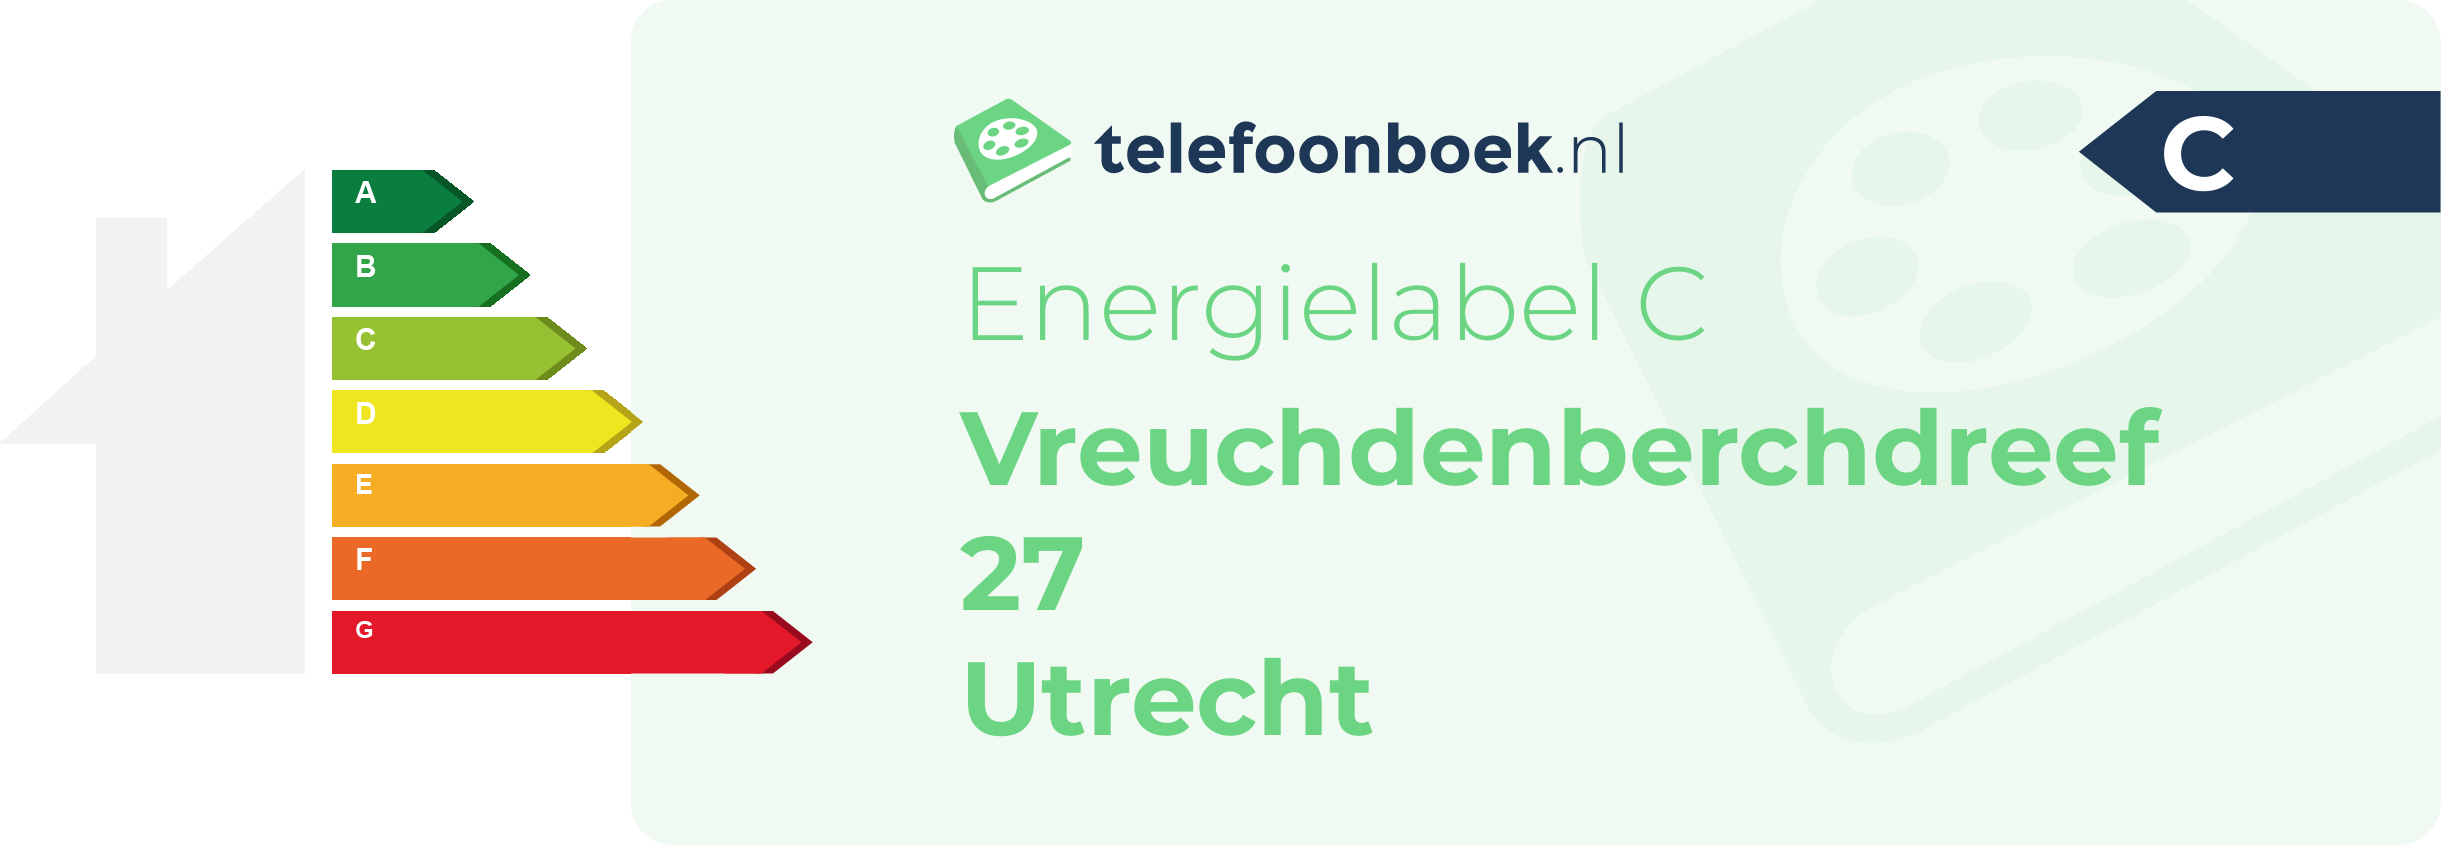 Energielabel Vreuchdenberchdreef 27 Utrecht